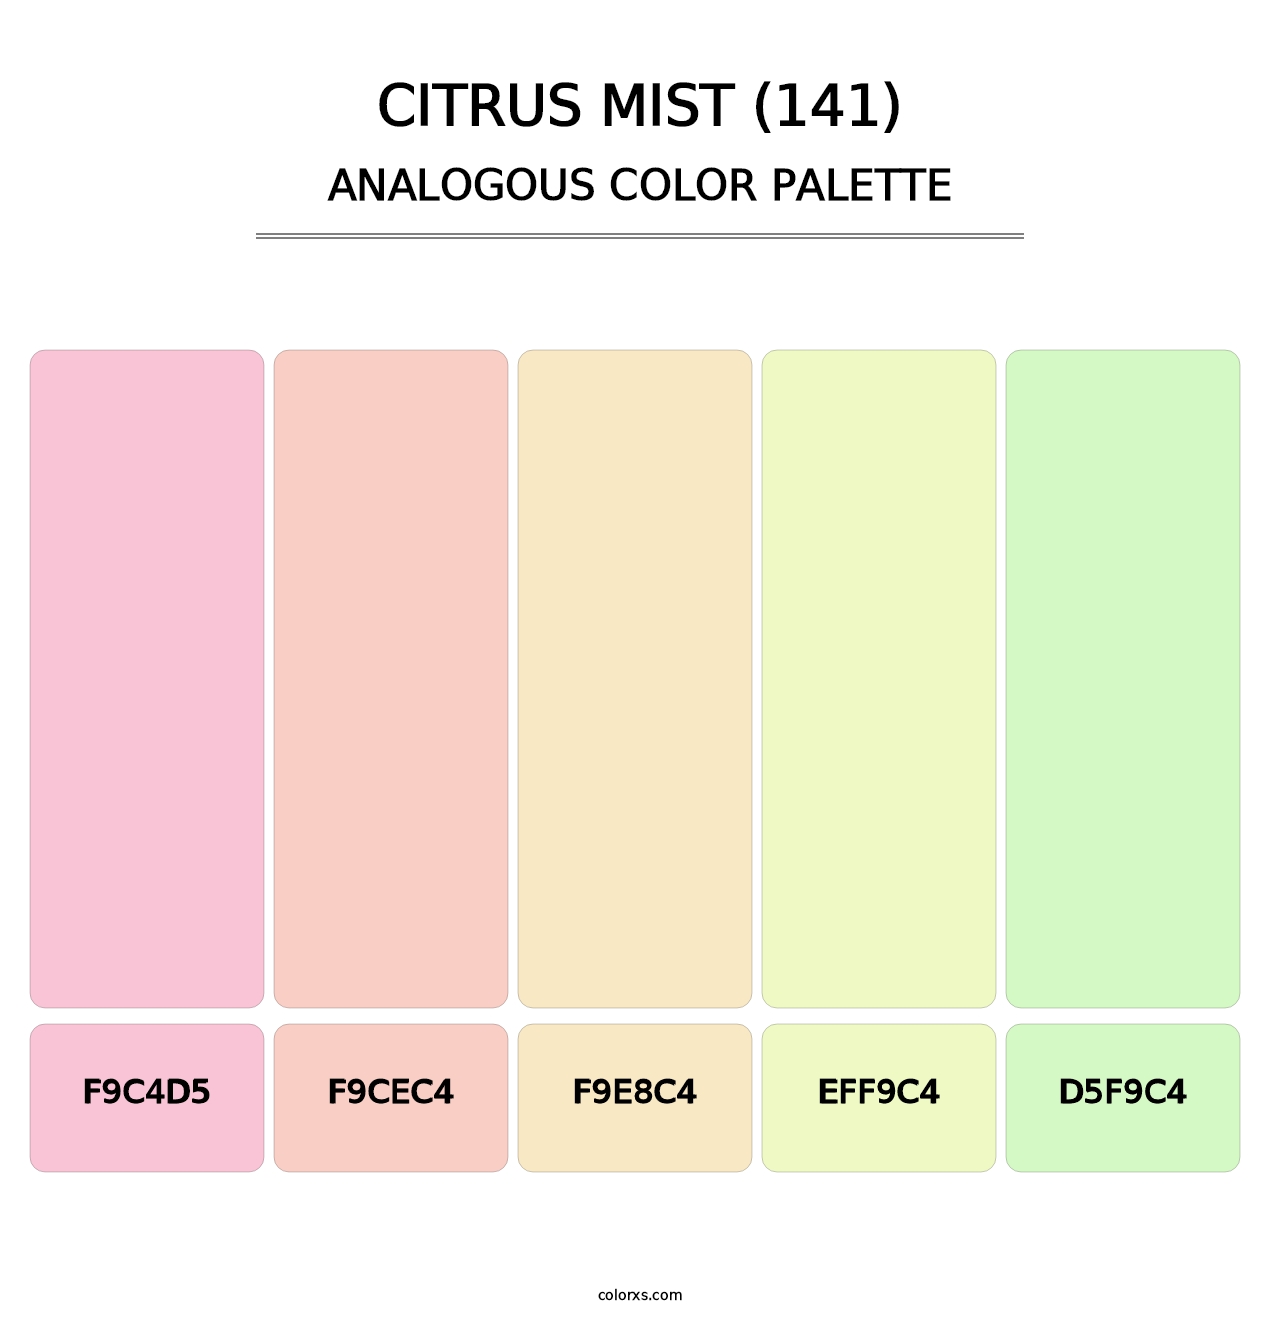 Citrus Mist (141) - Analogous Color Palette